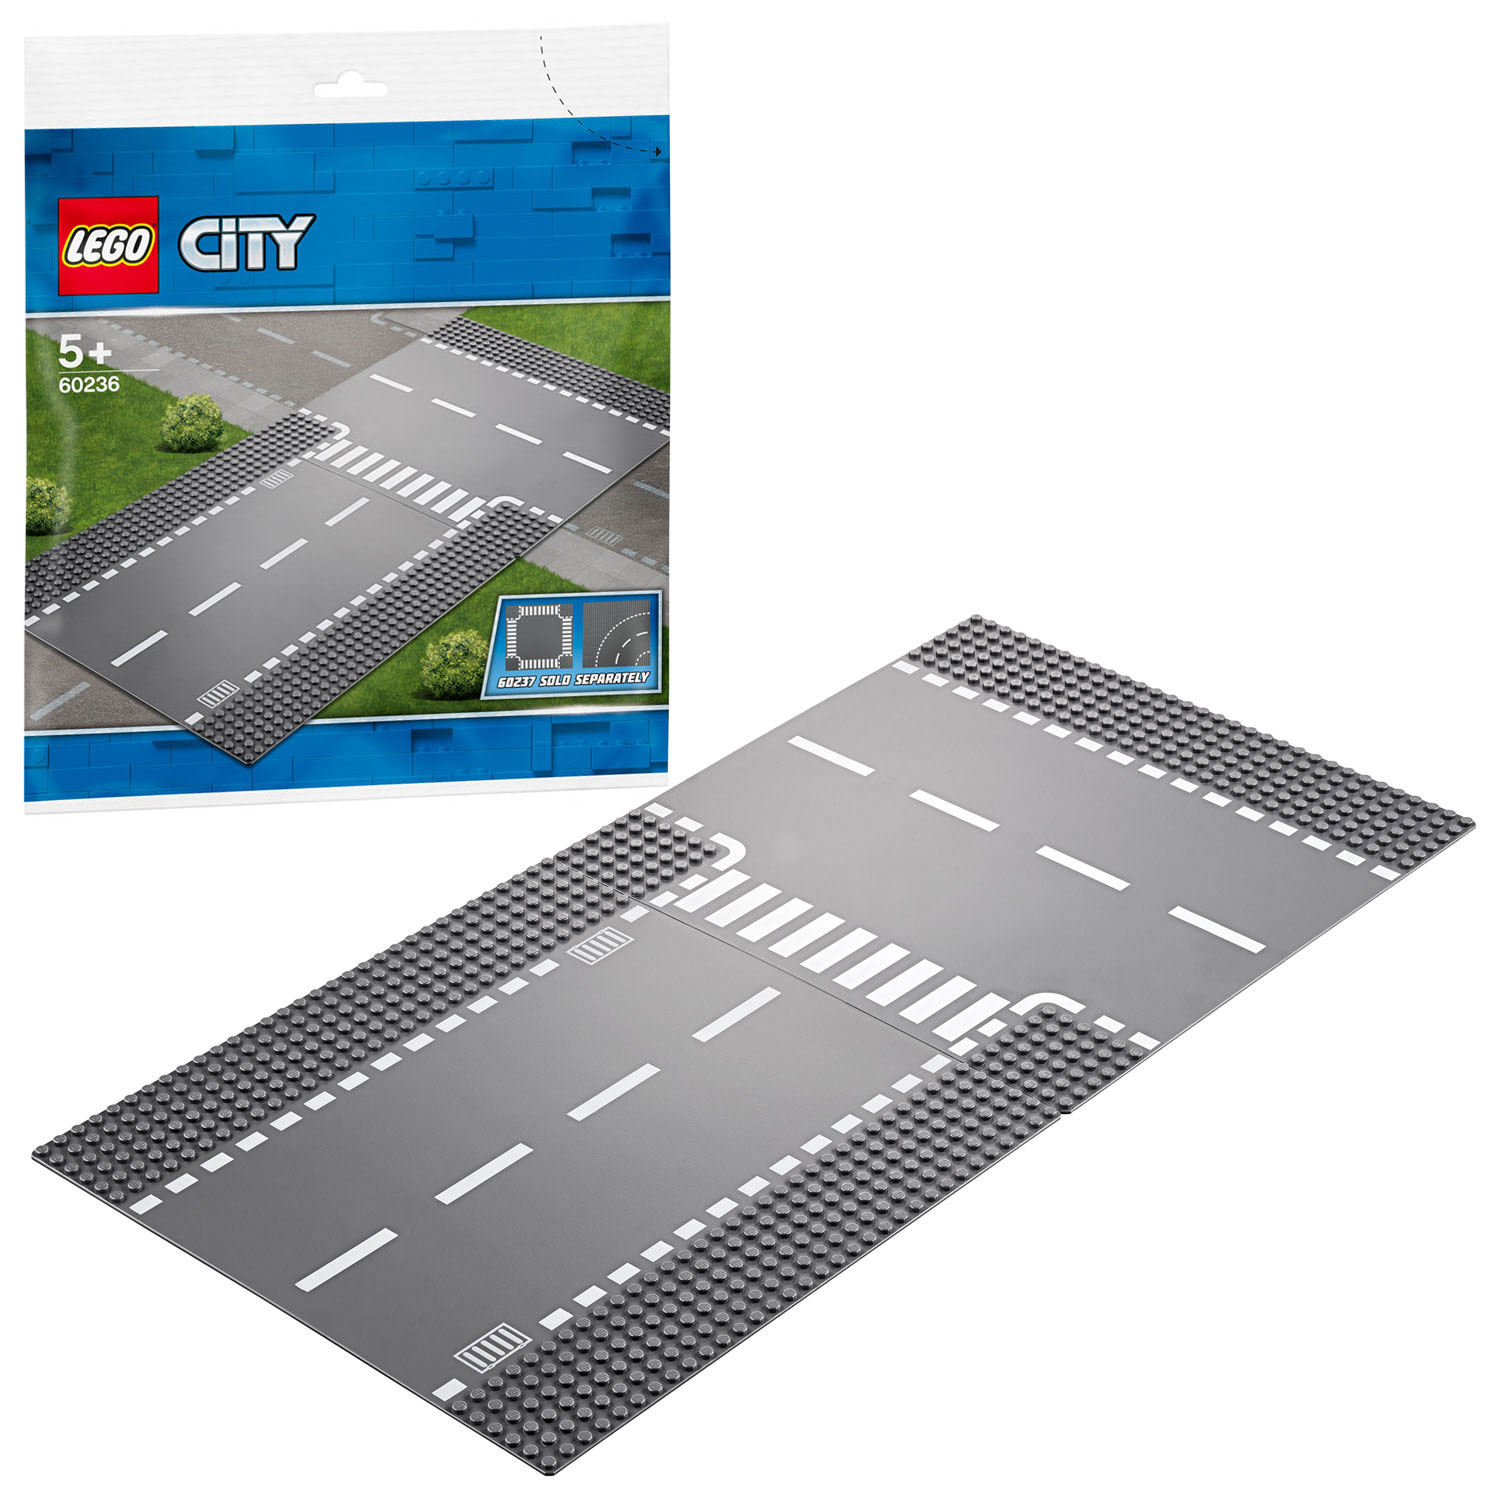 LEGO City 60236 Gerade und T-Kreuzung